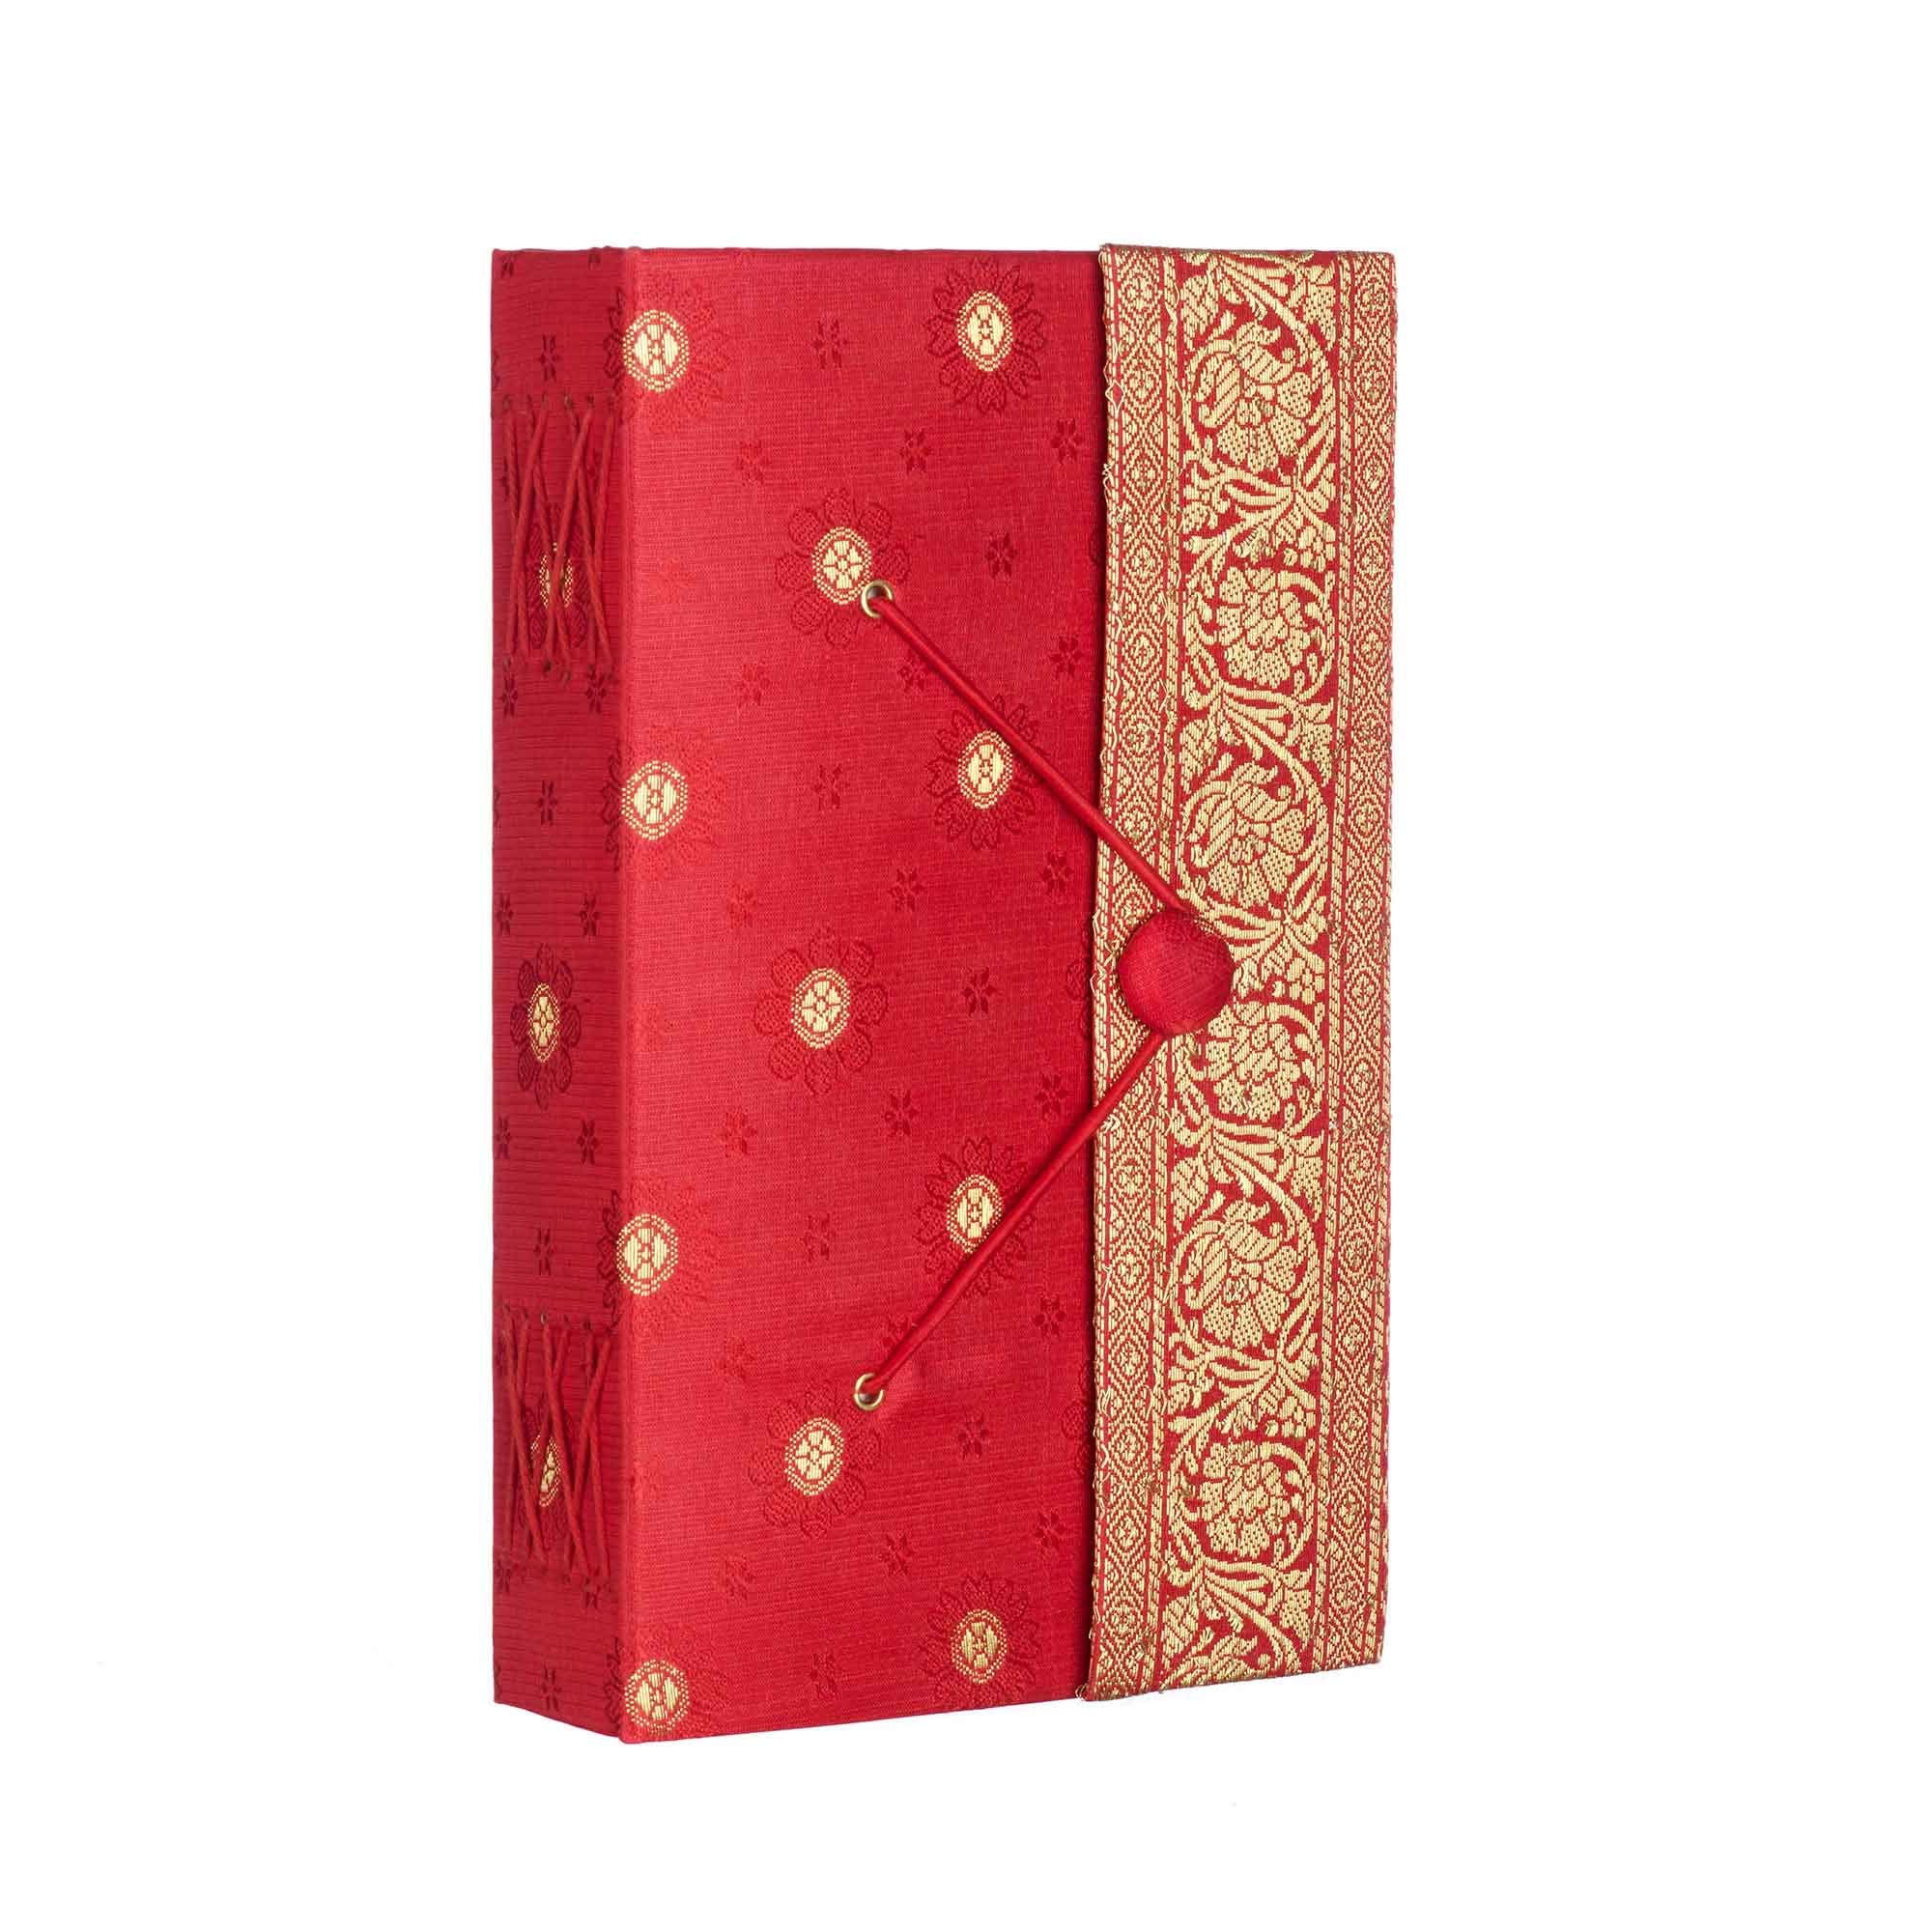 Handgefertigtes Rot Sari-Tagebuch – buntes Stoff-Tagebuch – handgebundenes Notizbuch oder Tagebuch – Geschenk für Schriftsteller – Notizbuch aus recyceltem Papier